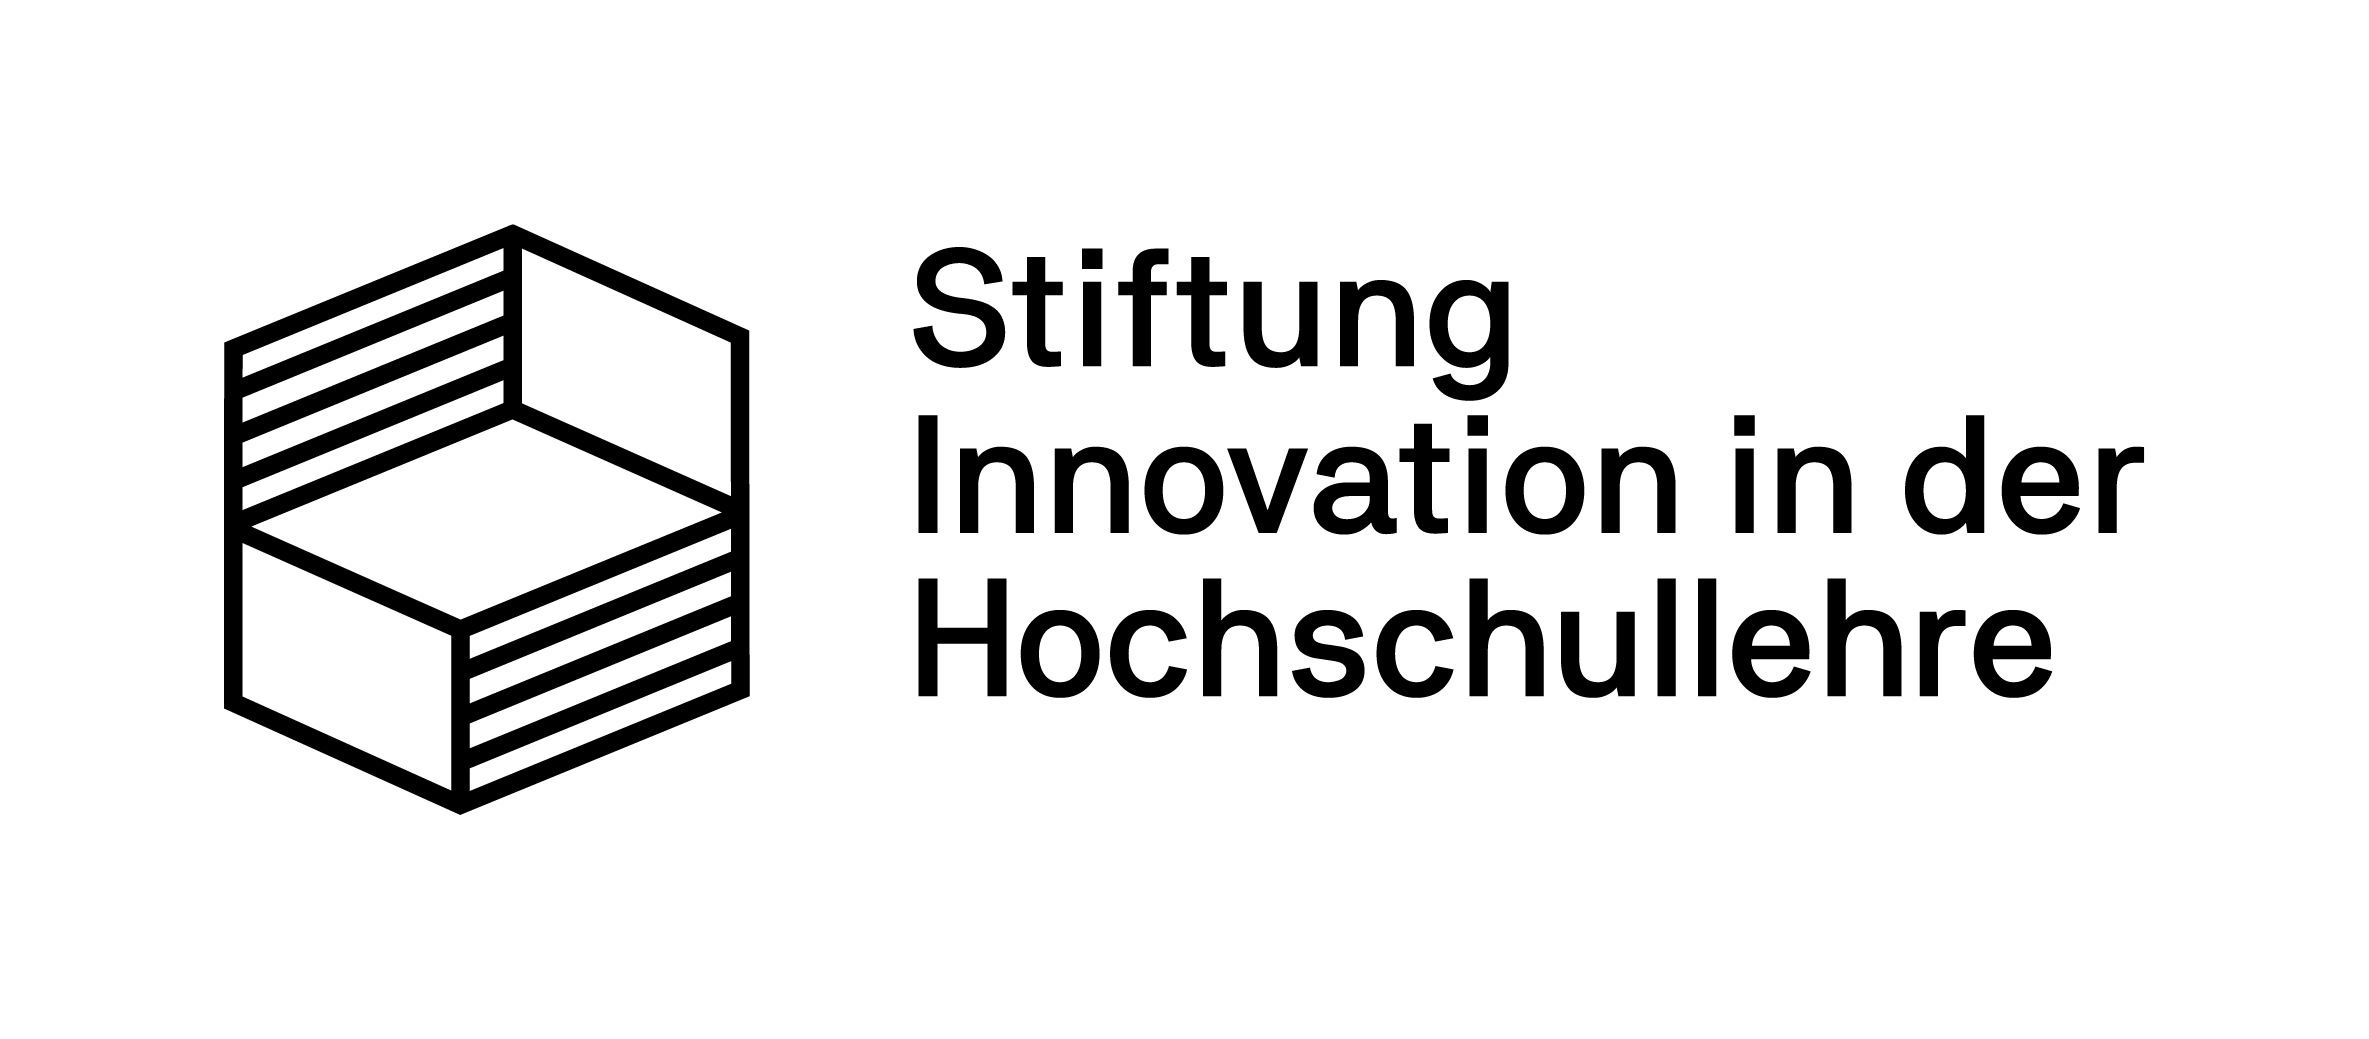 Das Logo der Stiftung Hochschullehre